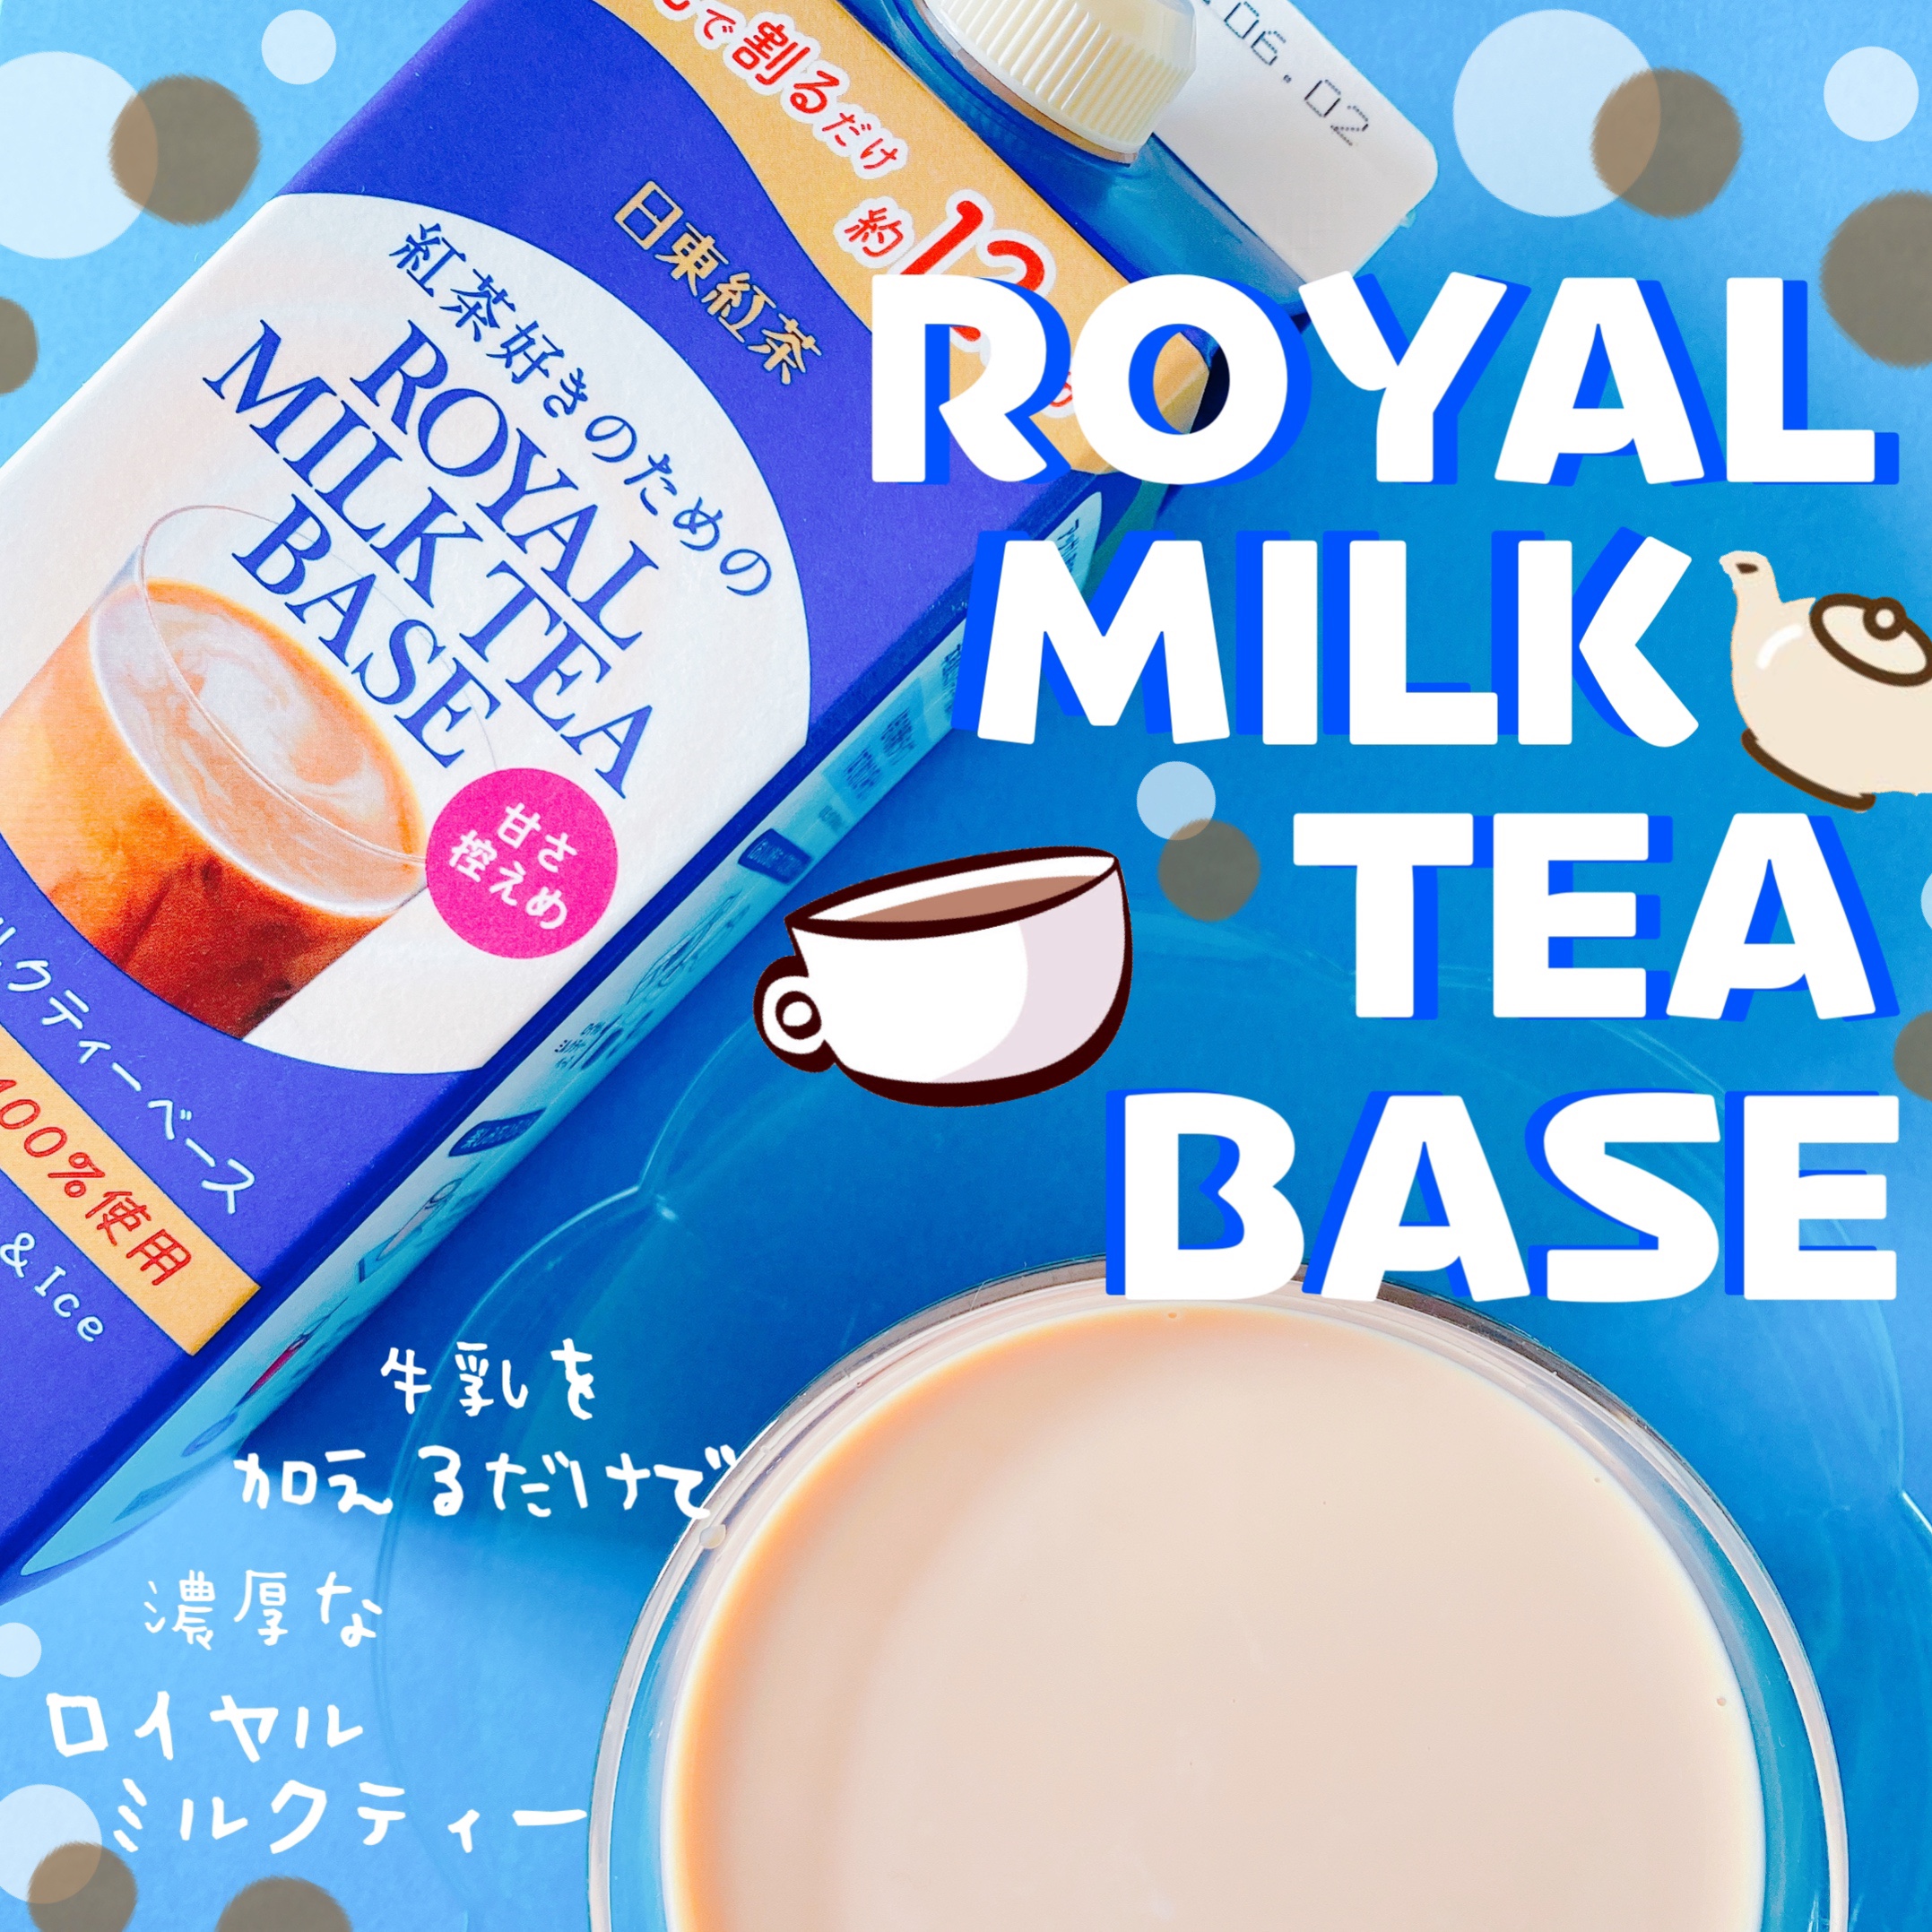 日東紅茶 ロイヤルミルクティーベースを飲んでみた感想、口コミ。 | こまっ茶の美魔女計画